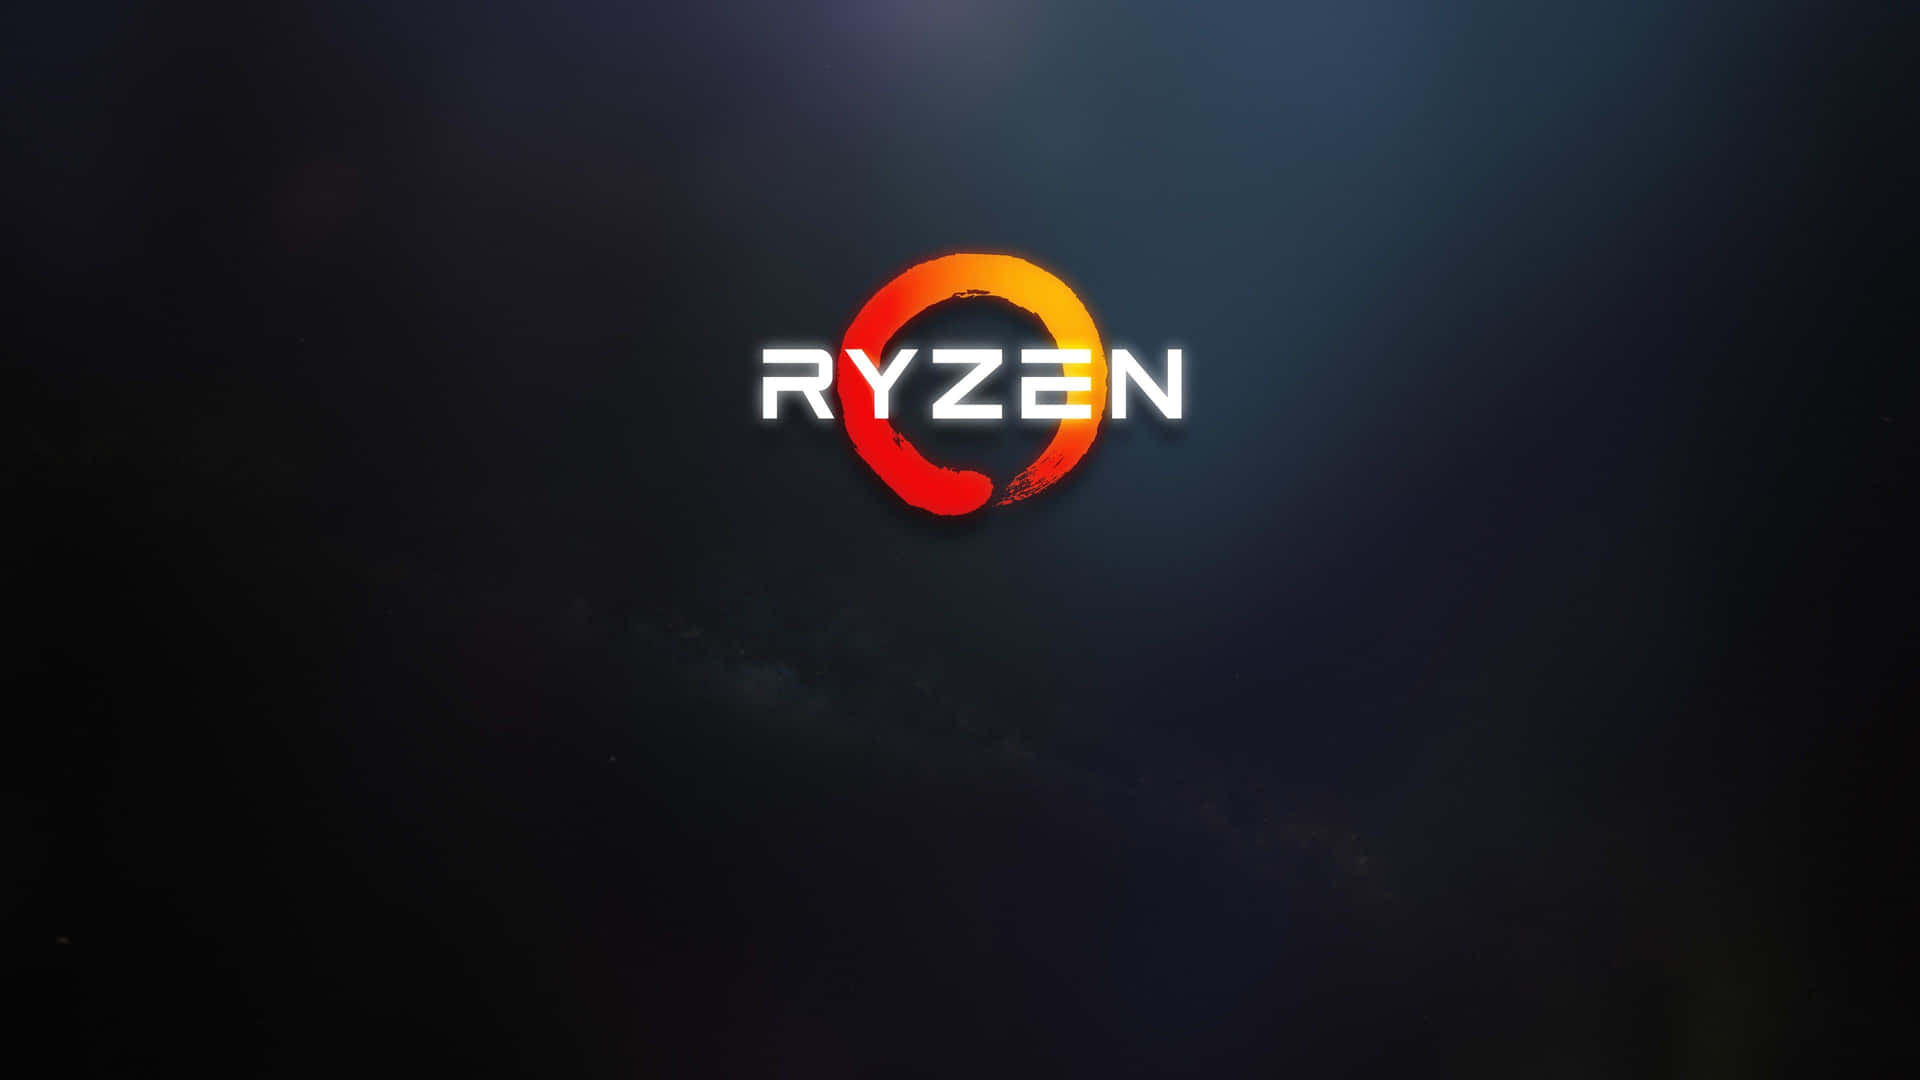 Ryzen Logo Dark Background Wallpaper